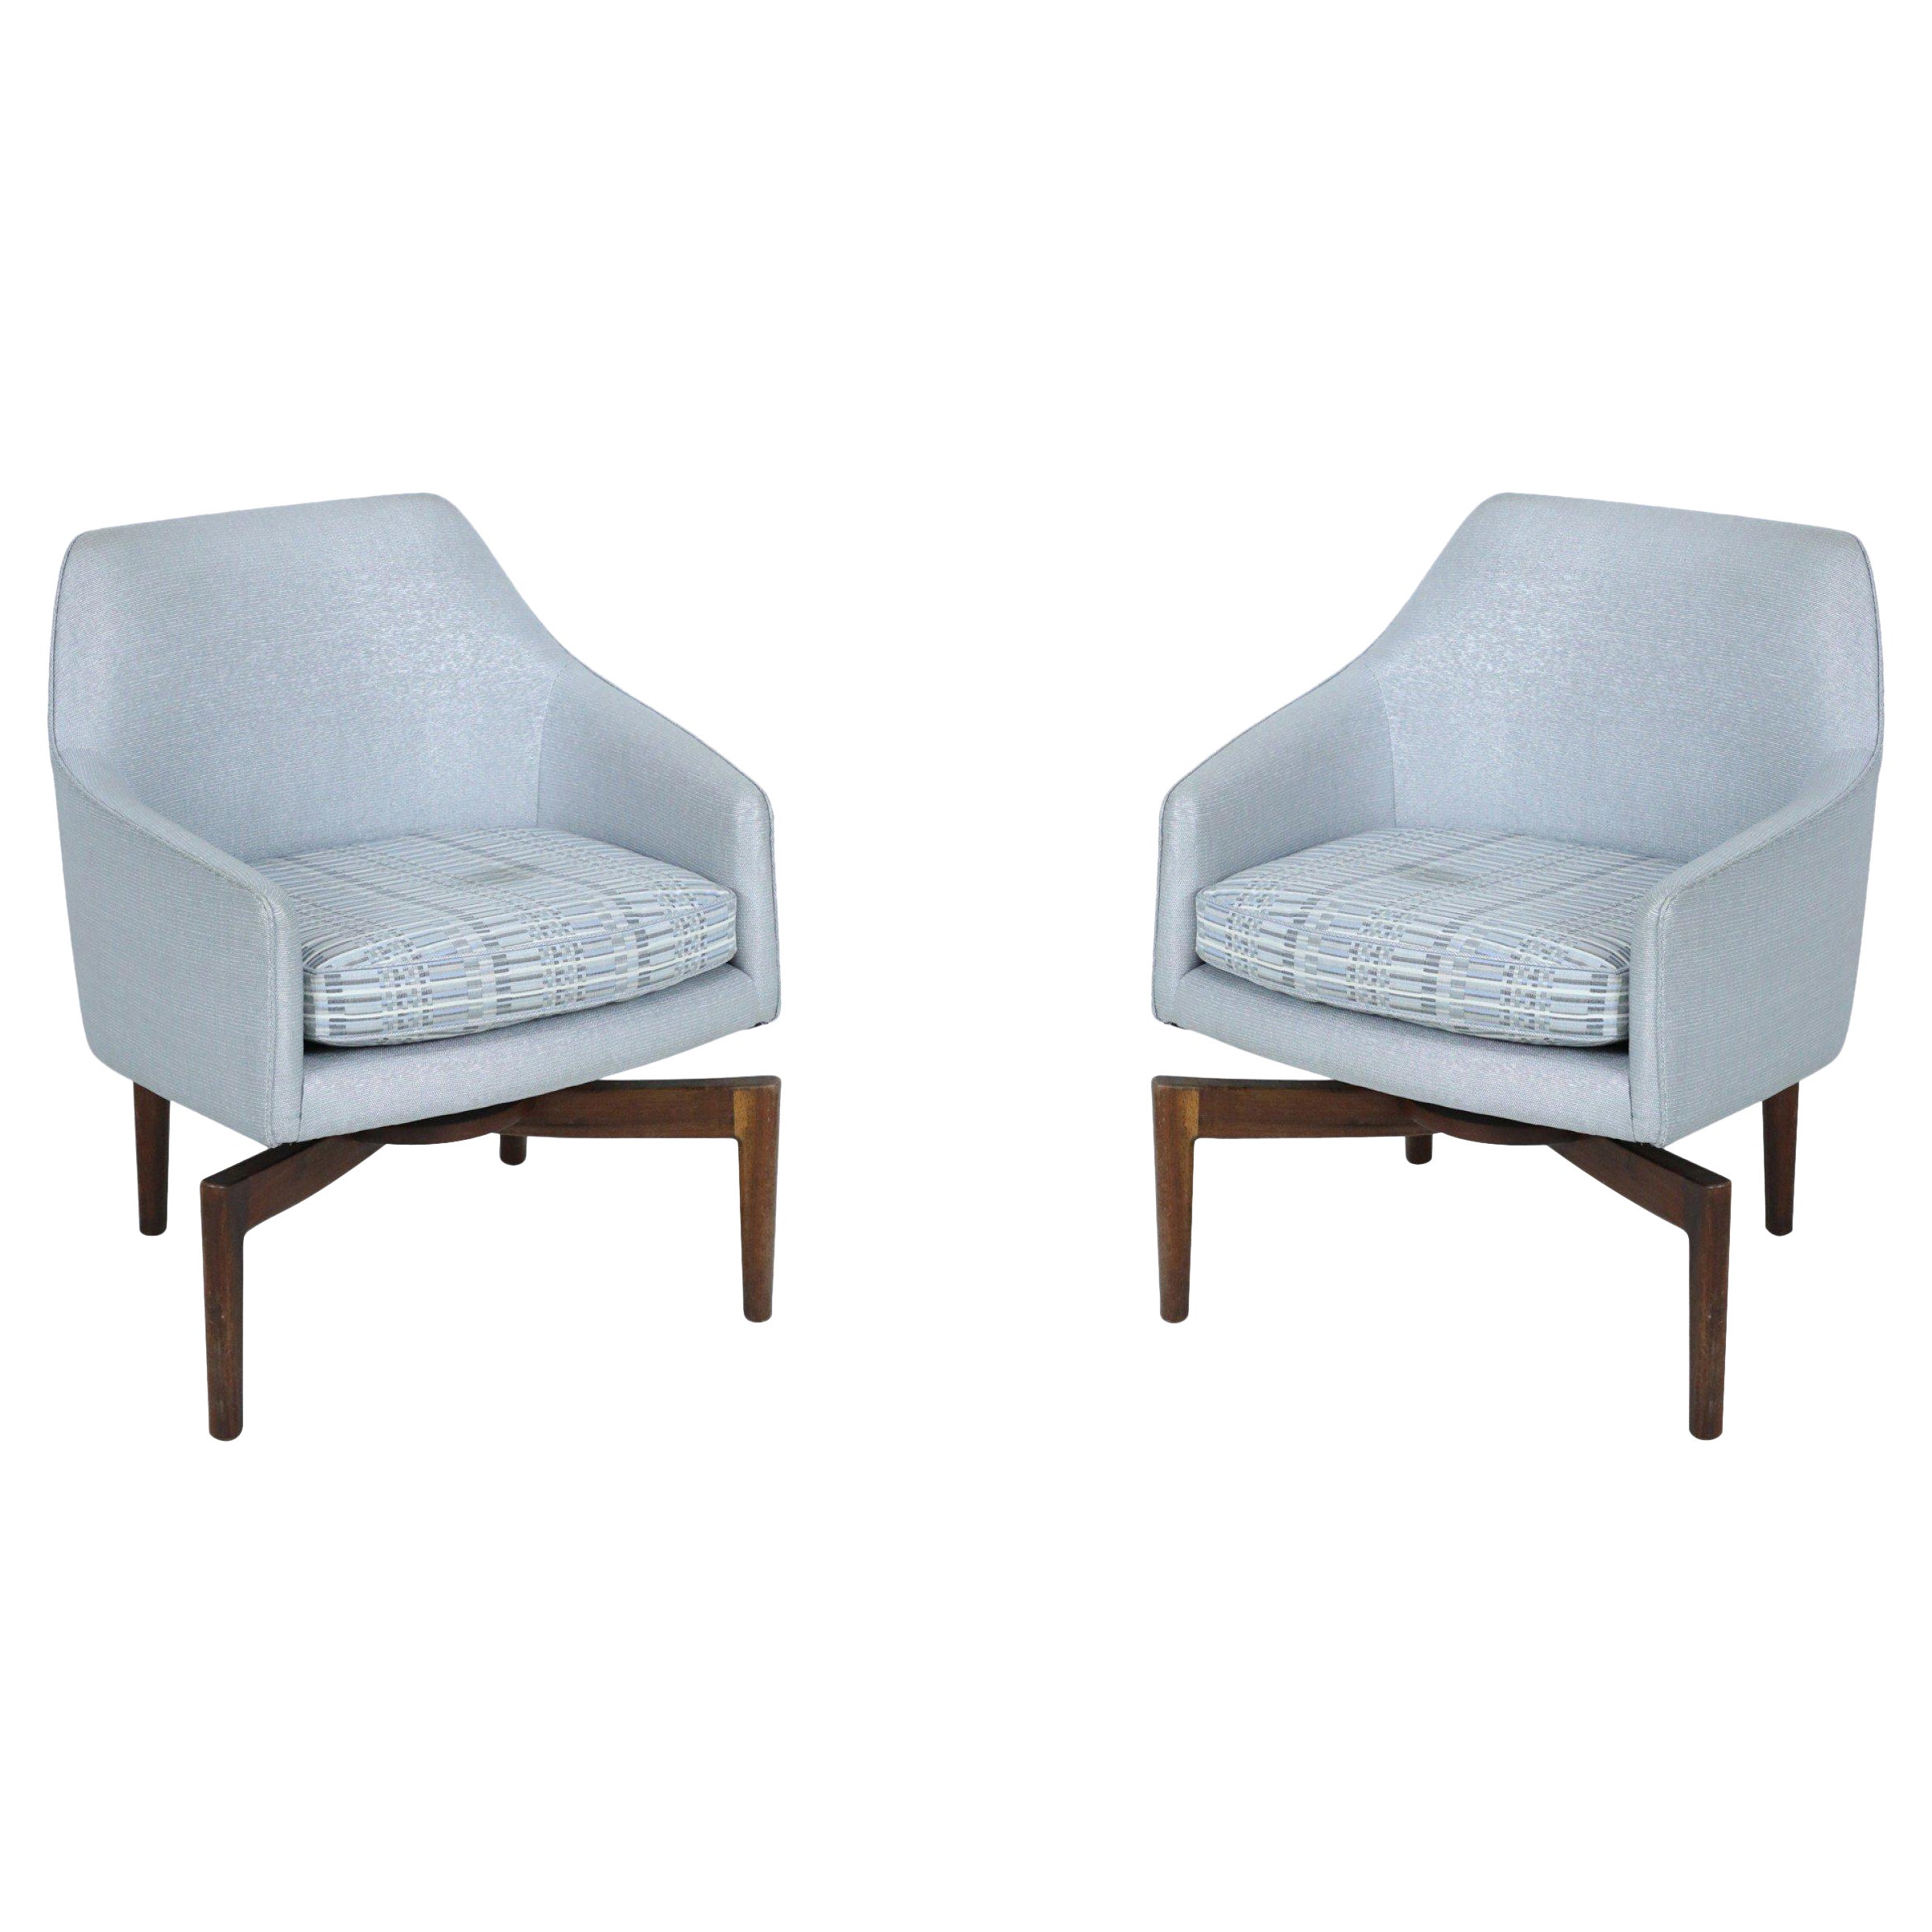 Paire de fauteuils pivotants tapissés argentés et métalliques de style mi-siècle moderne